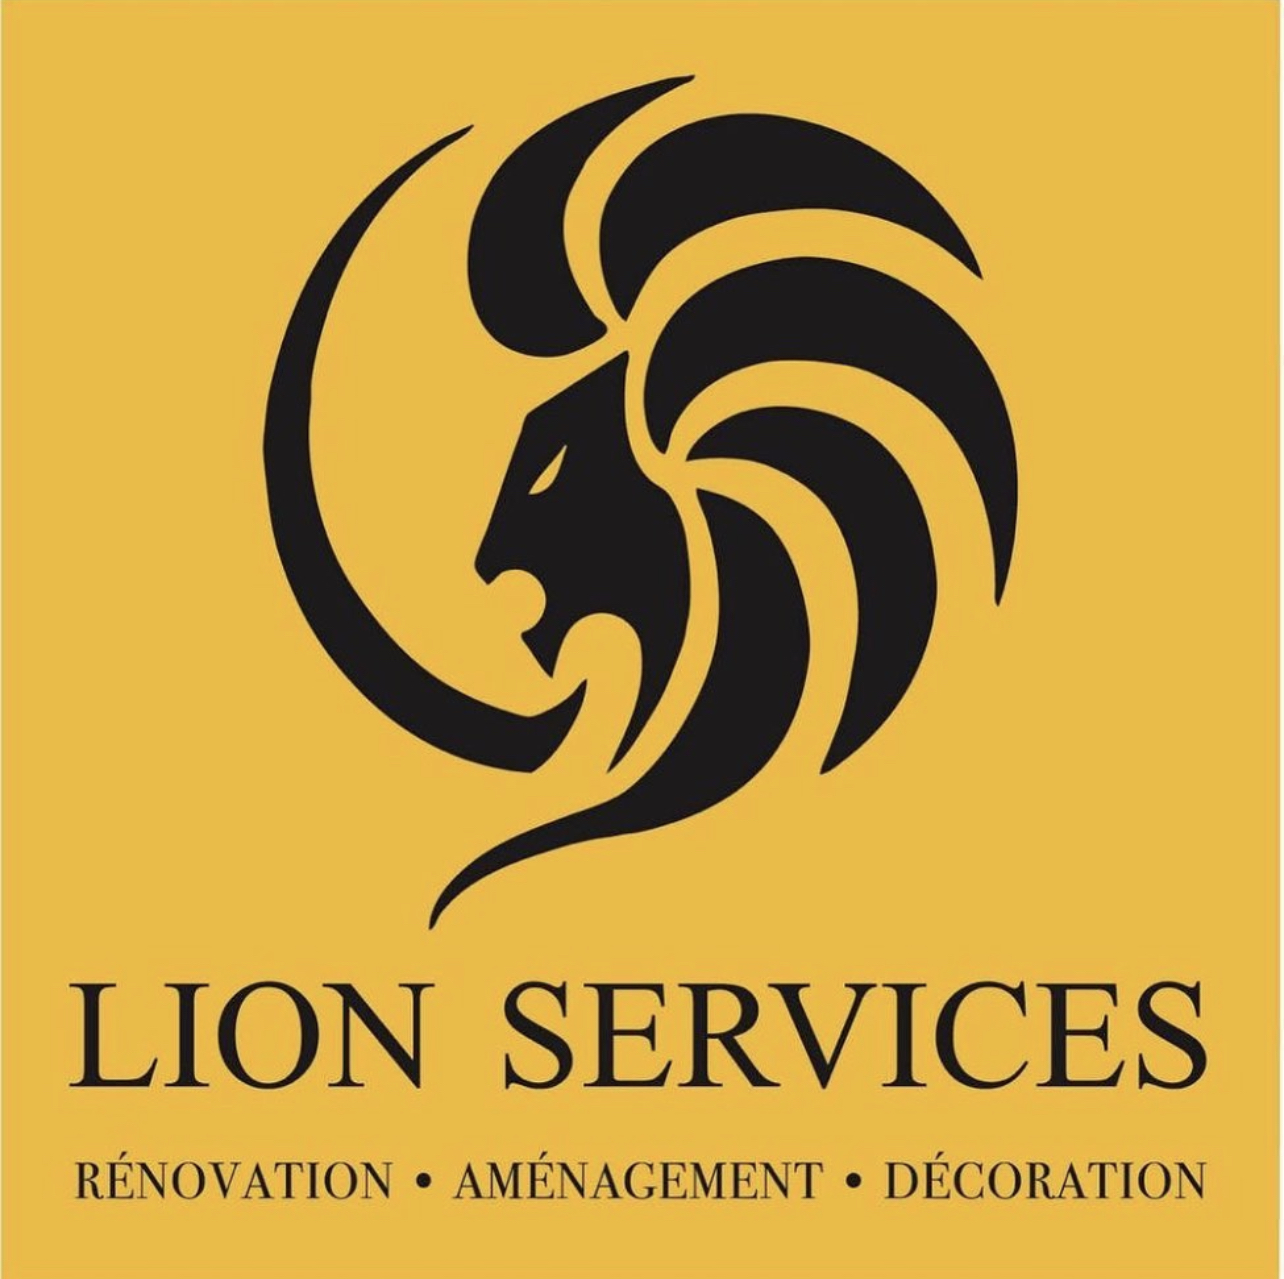 Lion Services